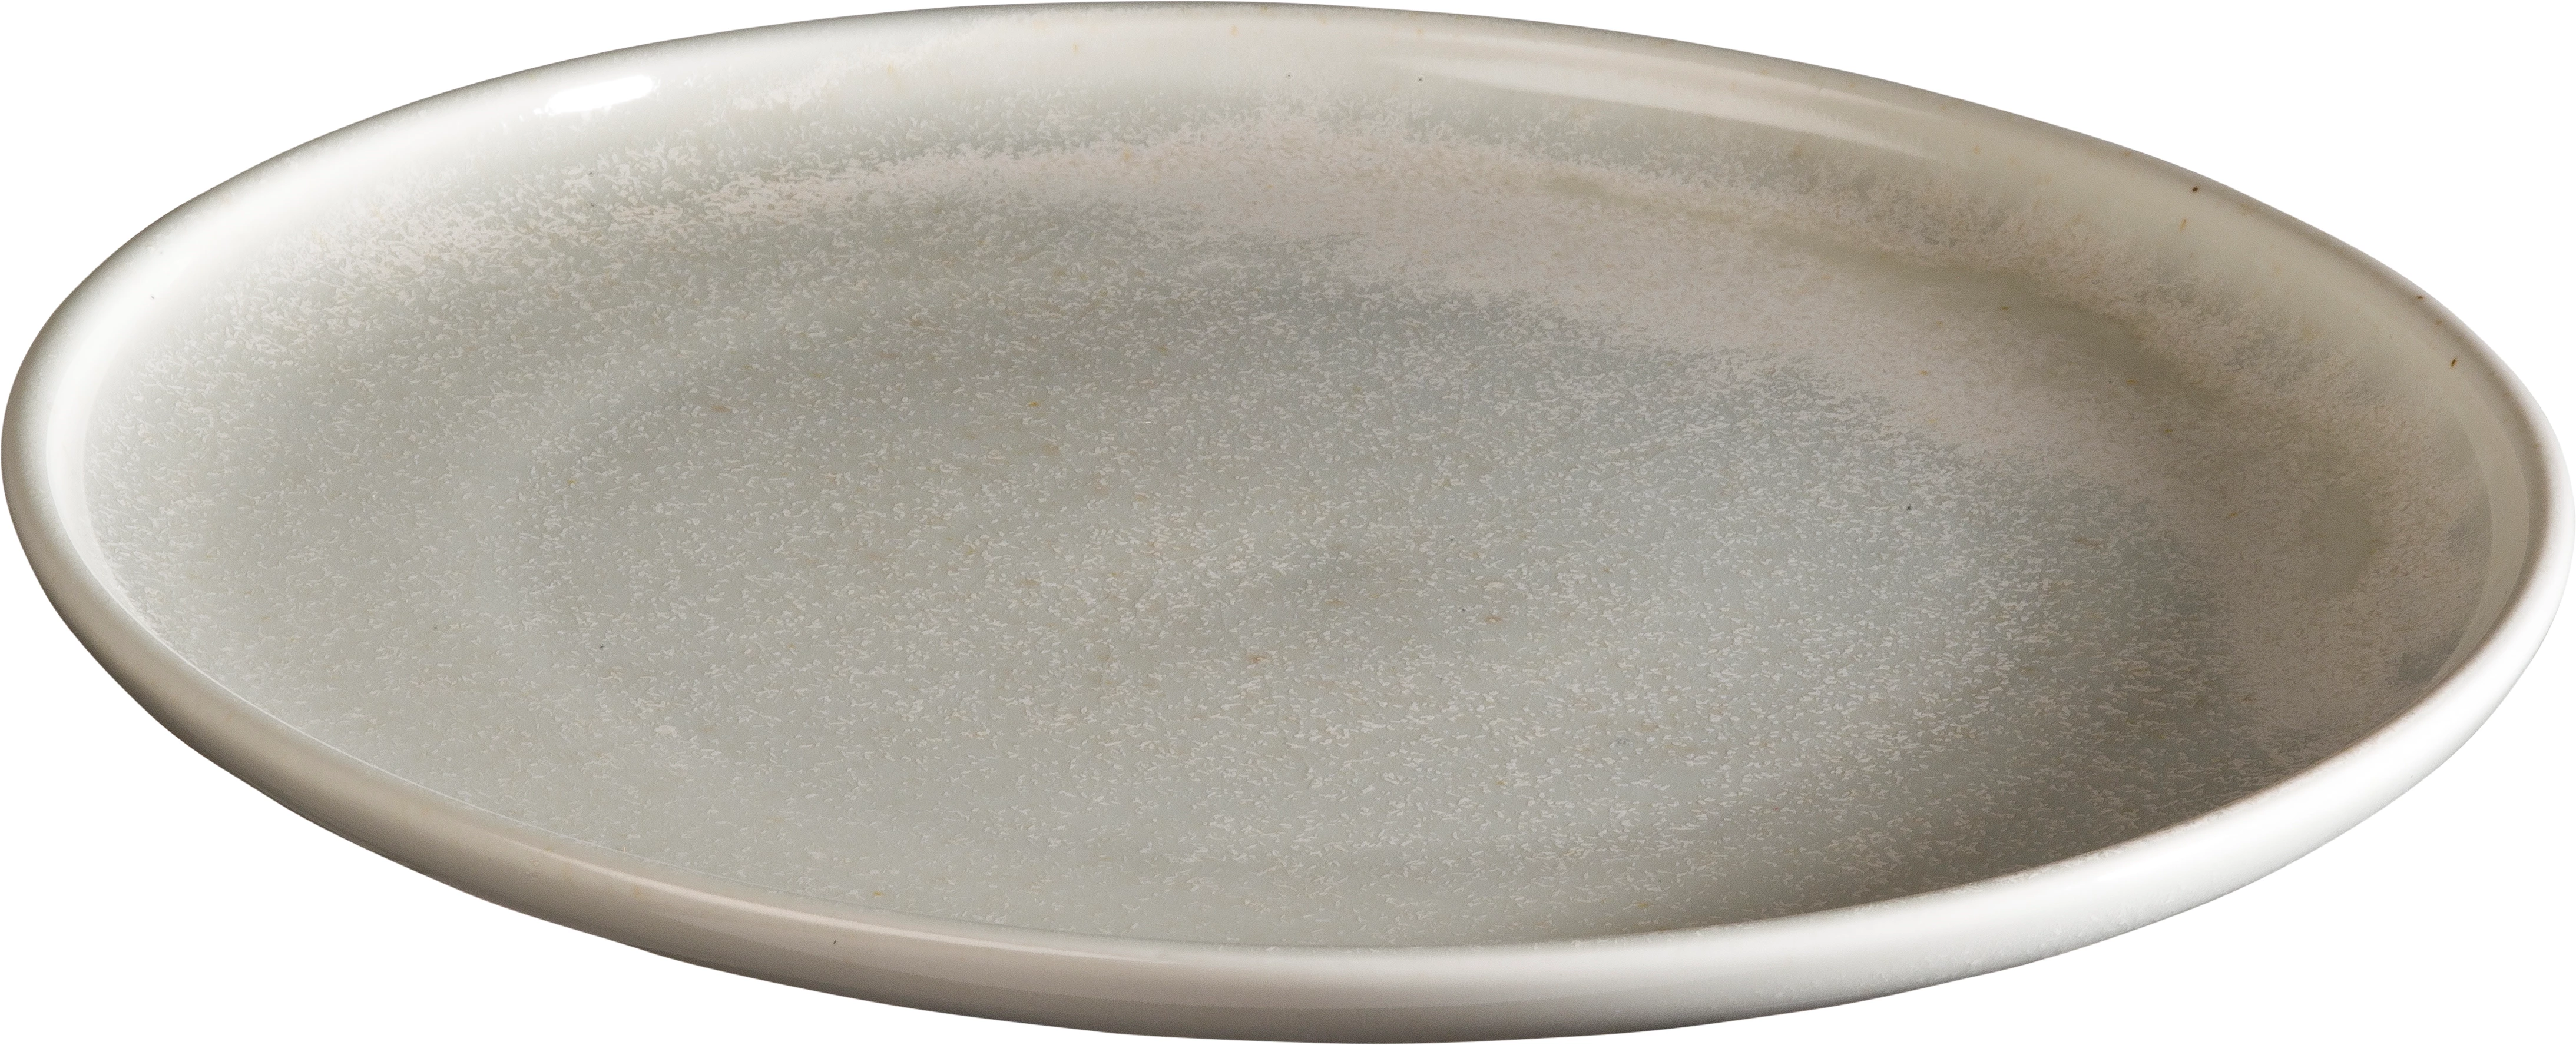 Qmulus flad tallerken uden fane, grå, ø28,5 cm